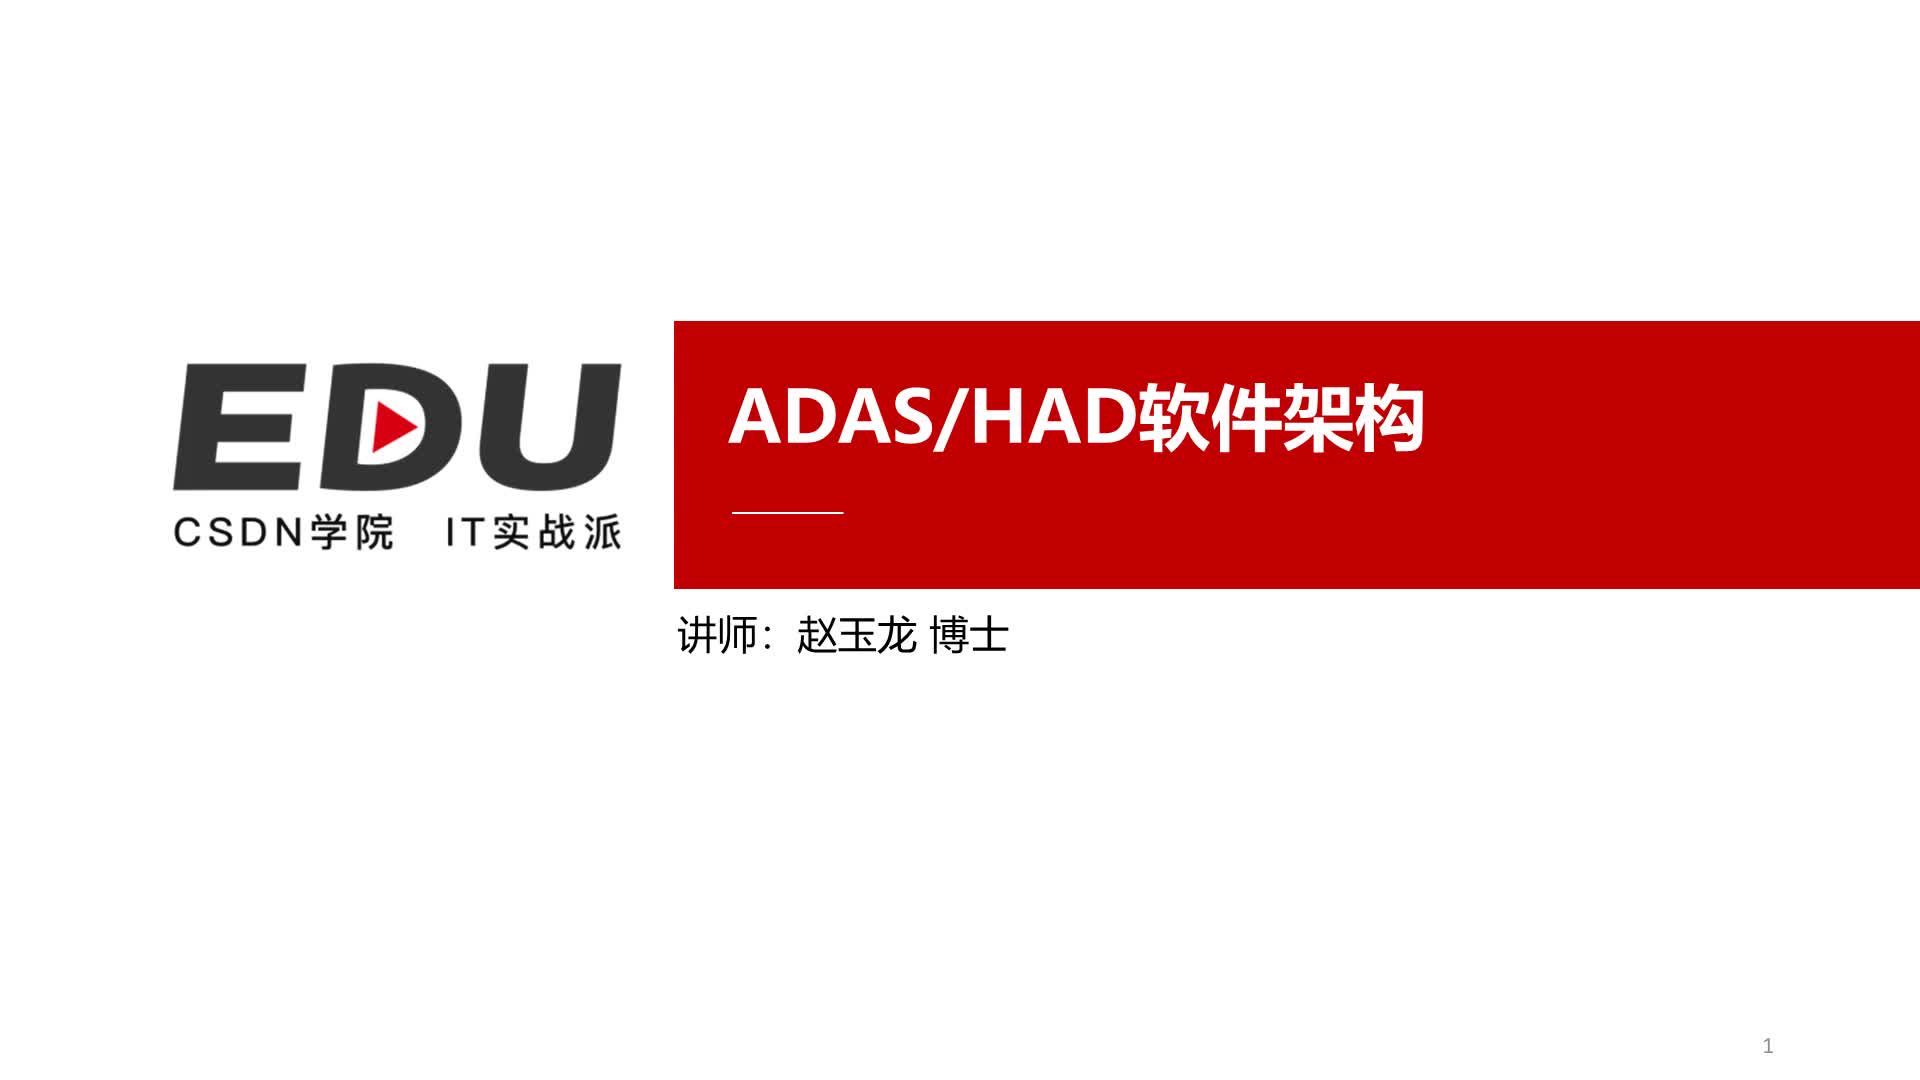 ADAS/HAD软件架构